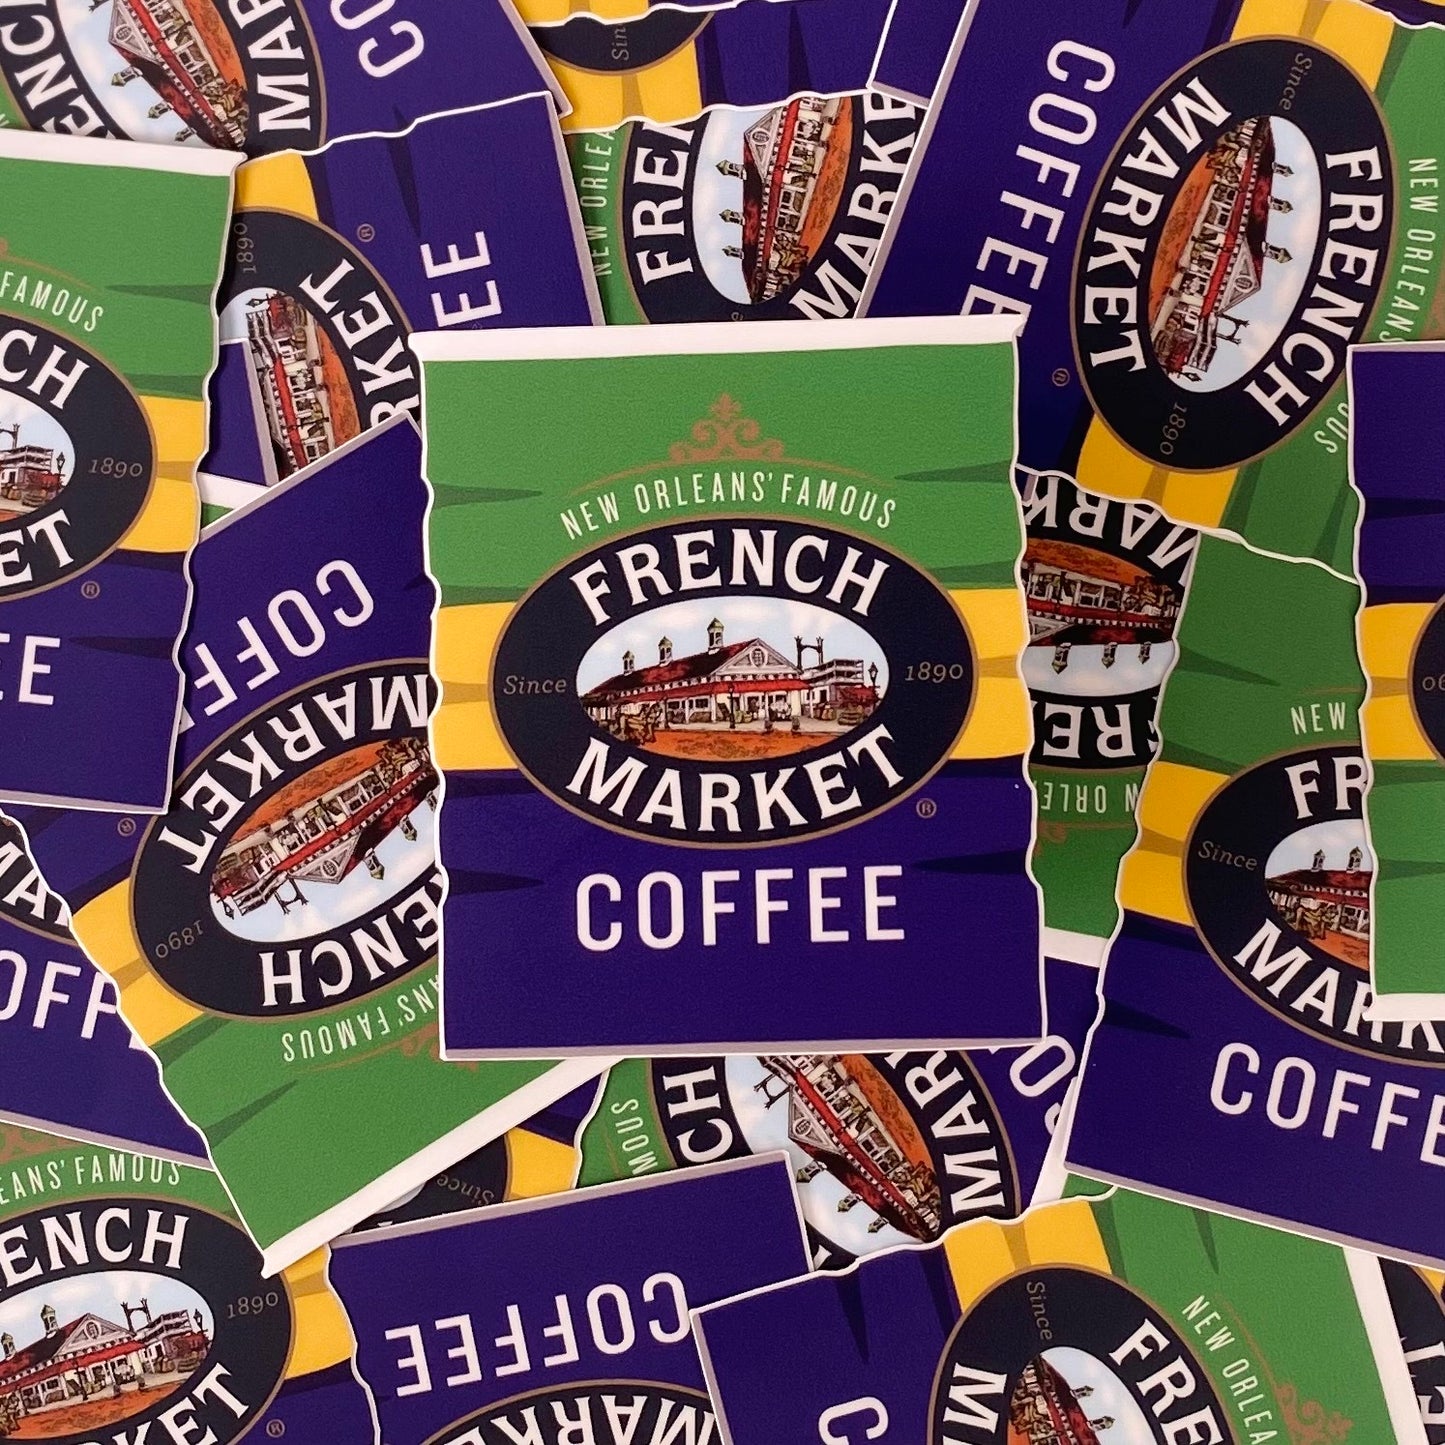 French Market Coffee Mardi Gras Sticker